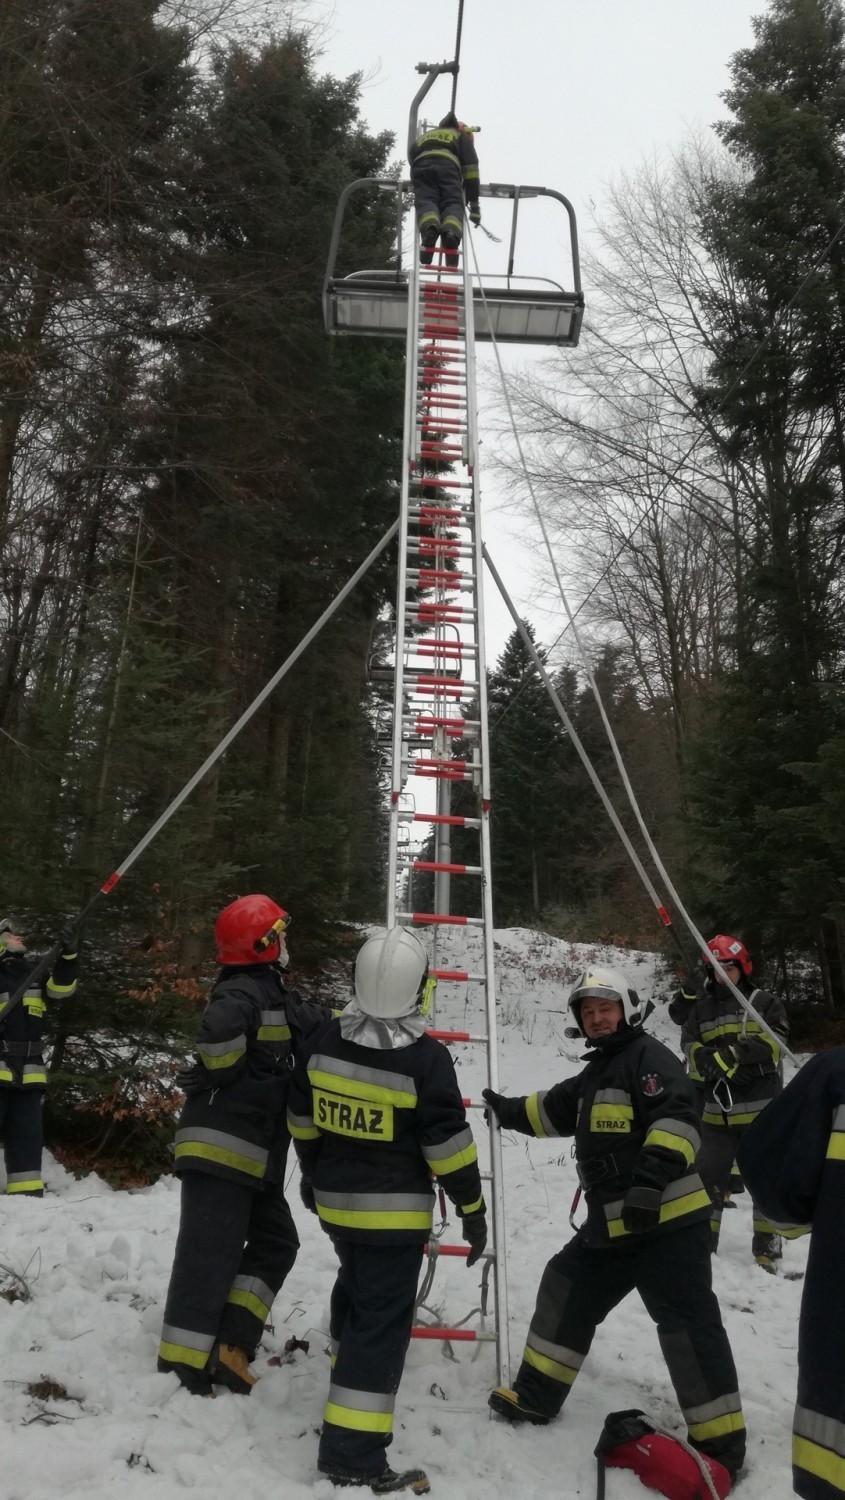 Strażacy trenowali ewakuację narciarzy z wyciągu na Magurze Małastowskiej. Wszystko, by w razie potrzeby szybko udzielić